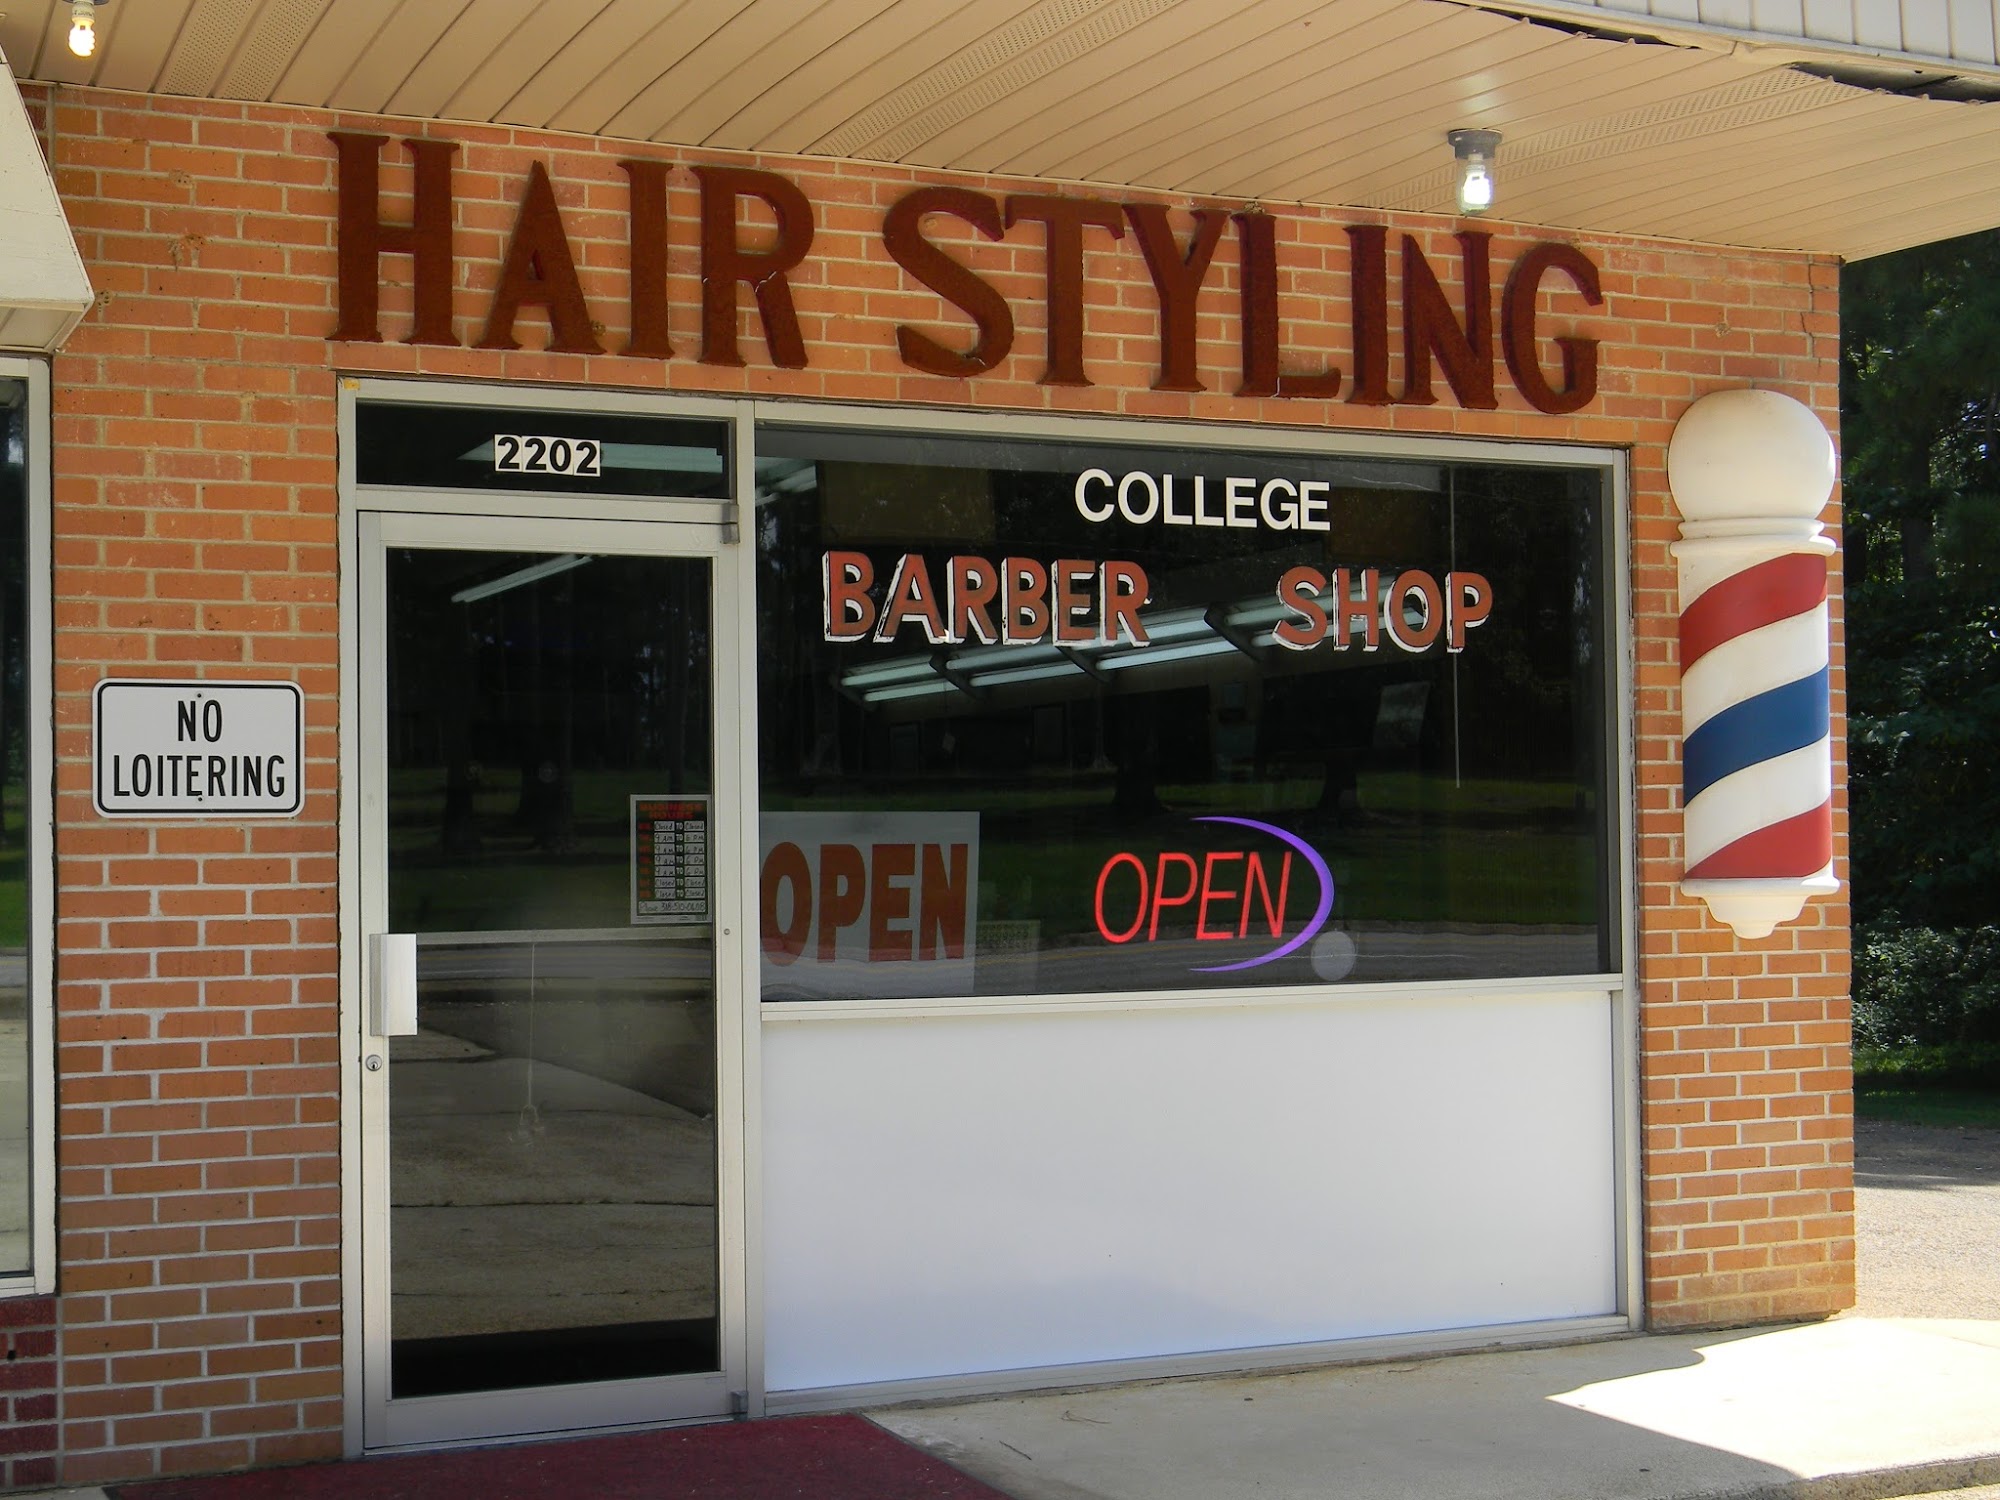 College Barber Shop